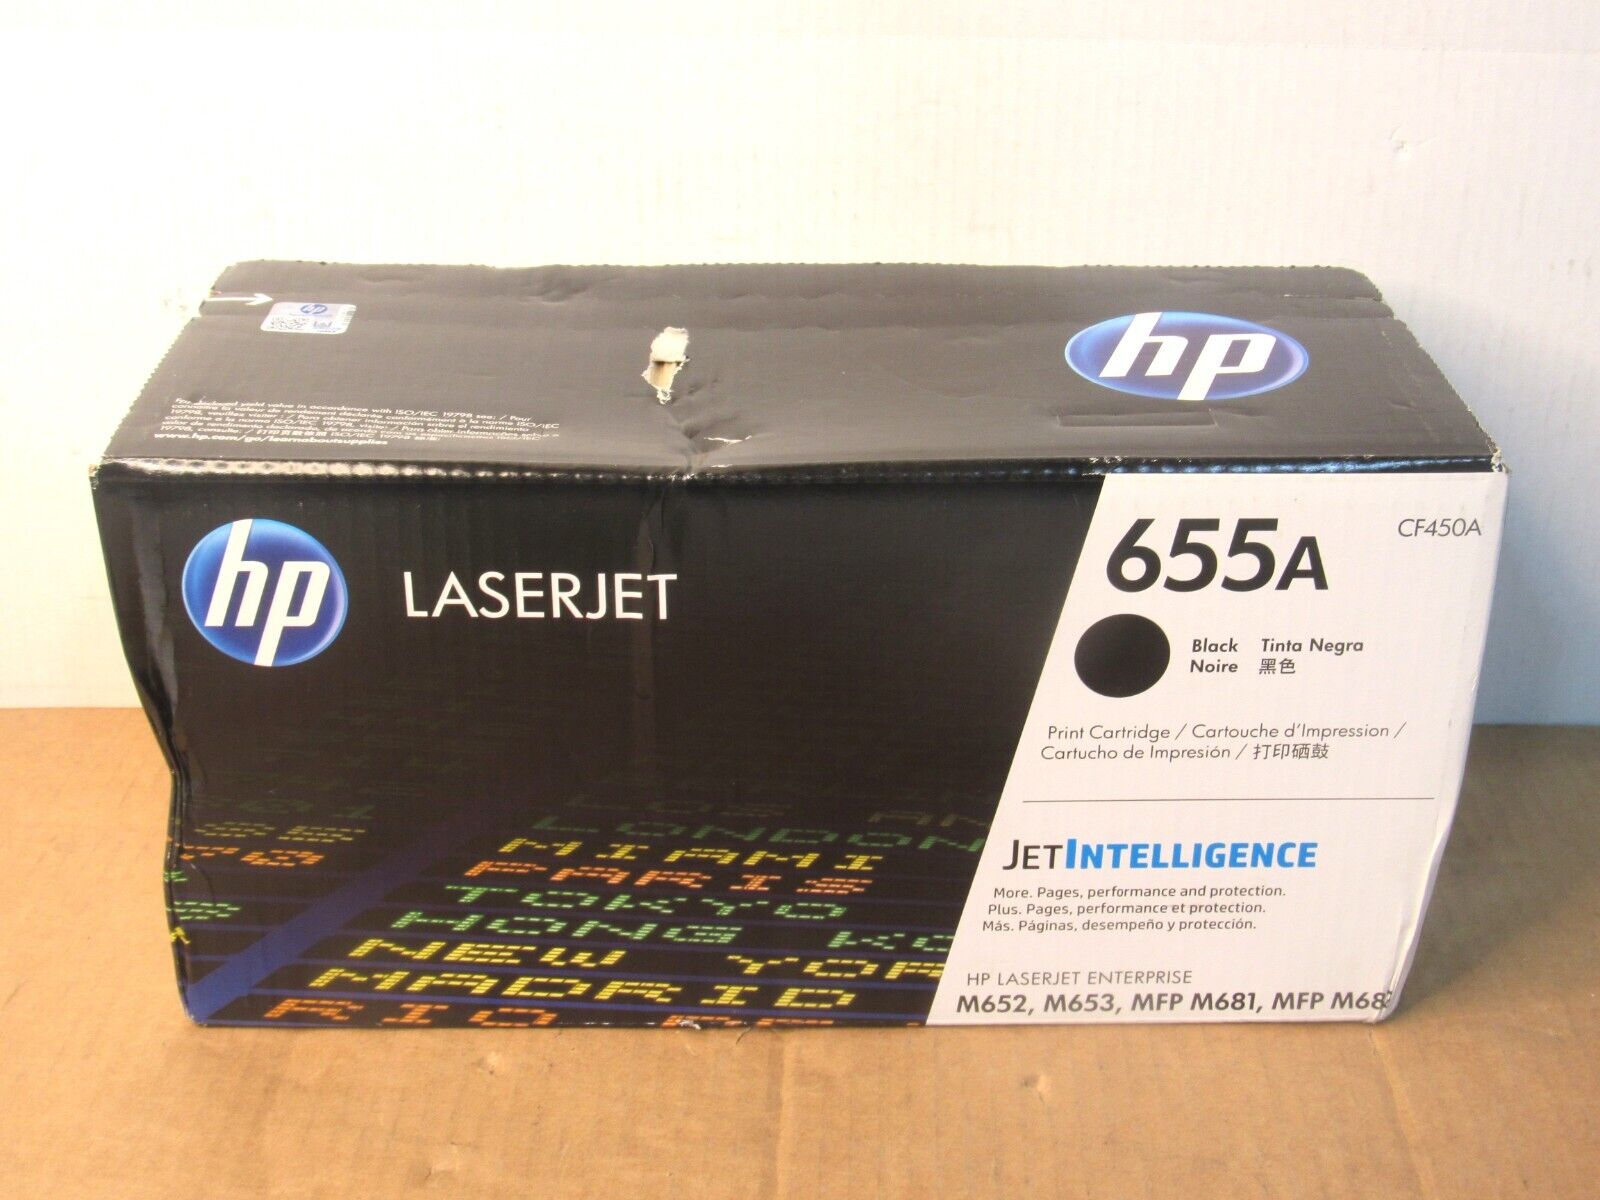 New HP 655A Black Laser Jet Toner Cartridge Model Number CF450A